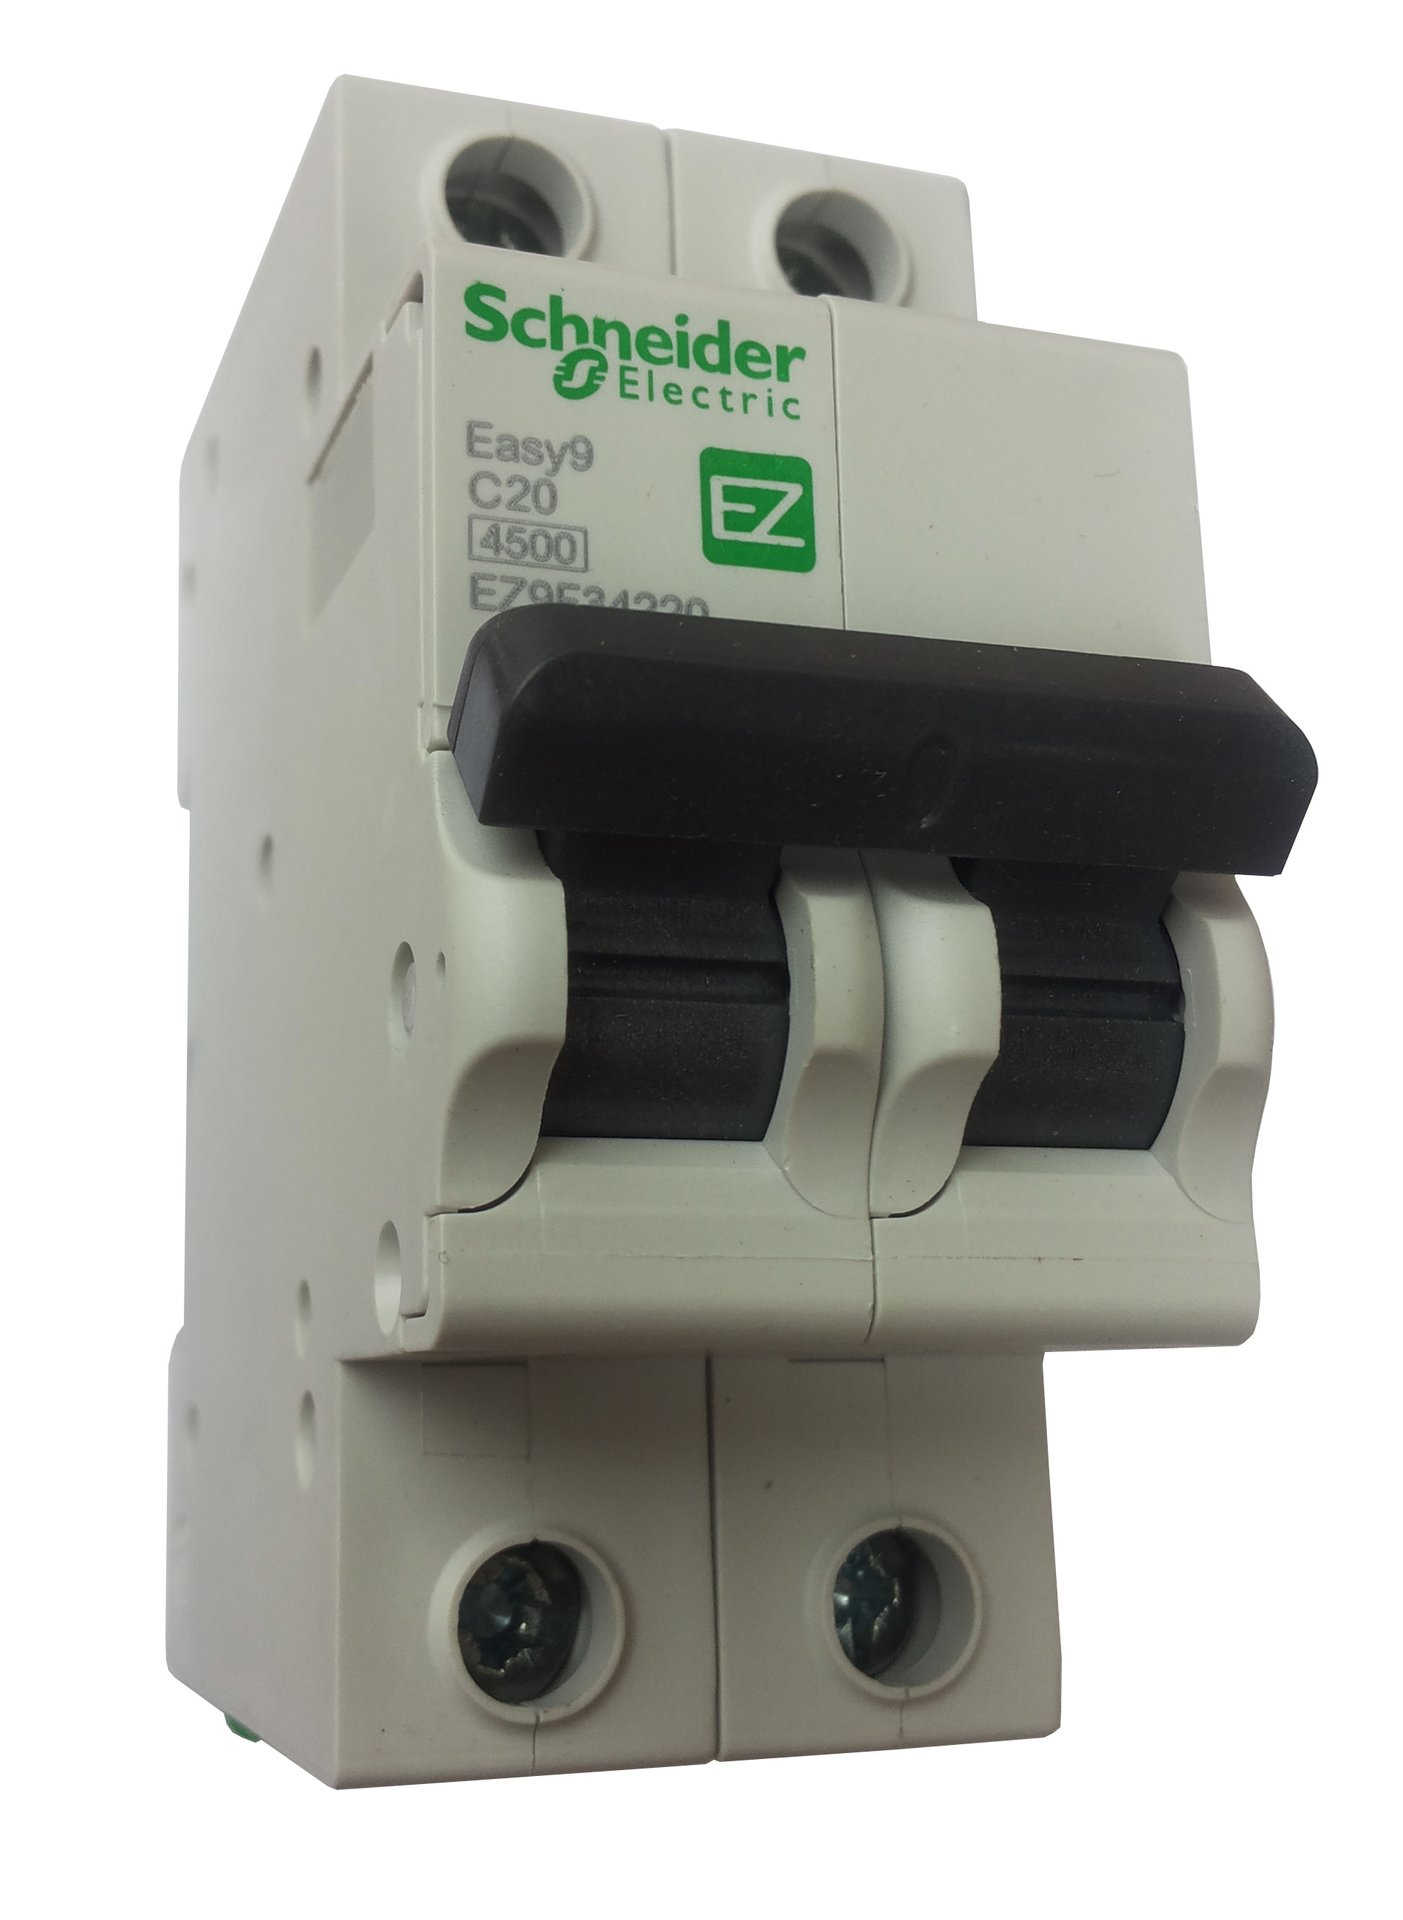 Автоматический выключатель 25а 2п. Автоматы Schneider Electric easy9. Шнайдер ИЗИ 9 автоматы. Автоматический выключатель Schneider Electric easy 9 4p (c) 4,5ka 10 а. Автомат 2п 32а Шнайдер.